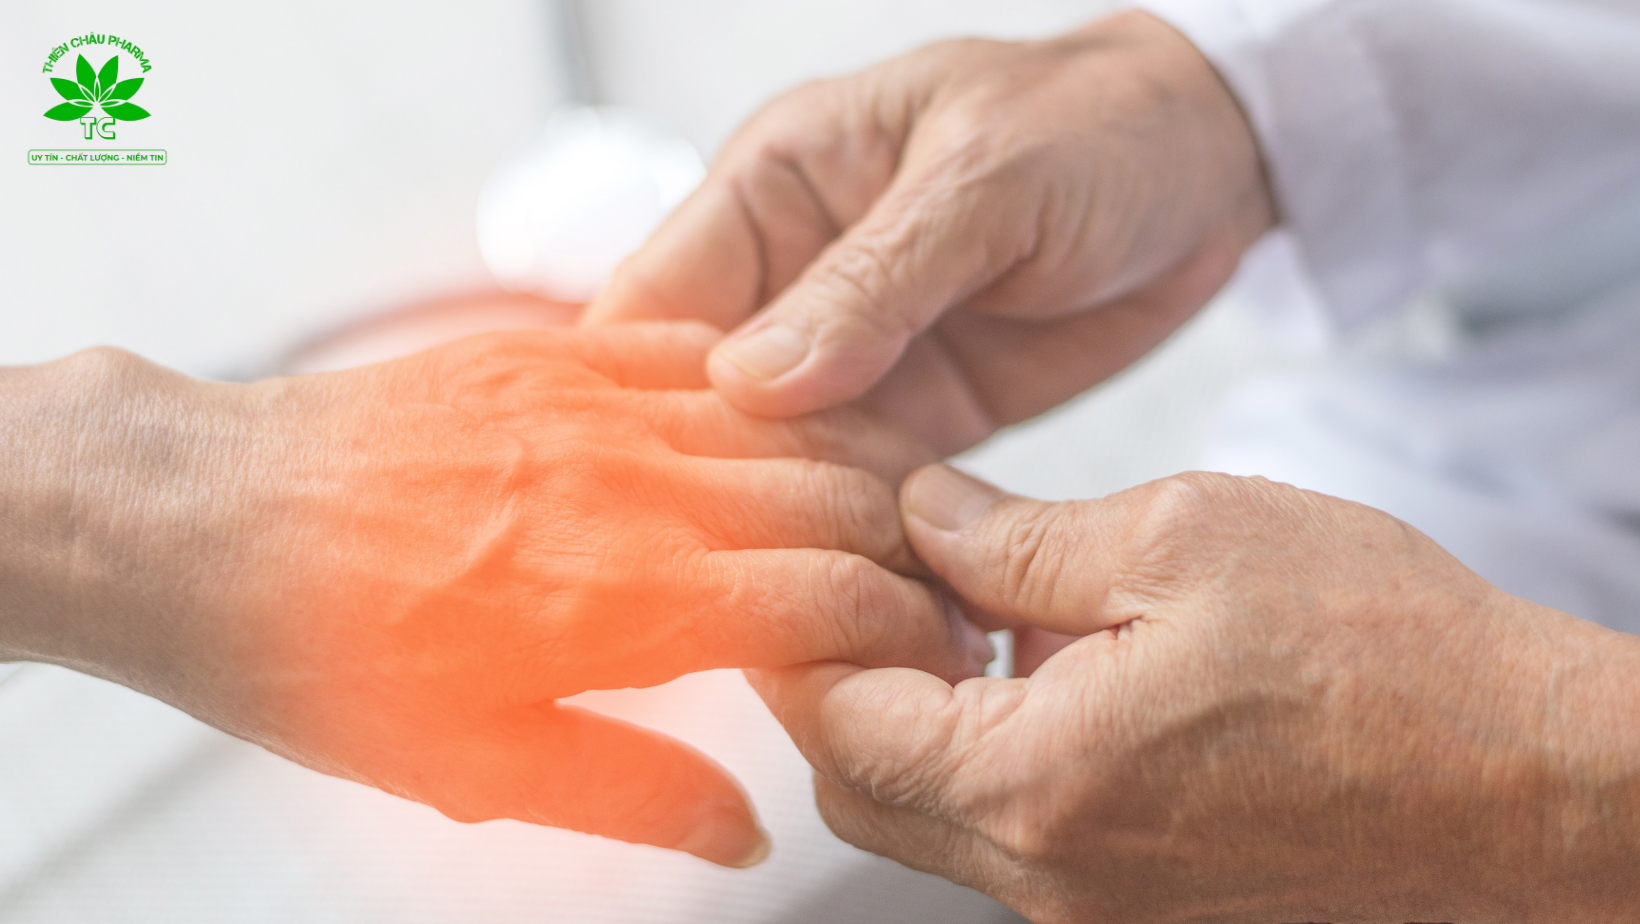 Tê bì chân tay là bệnh gì? Nguyên nhân, hướng điều trị và cách phòng ngừa